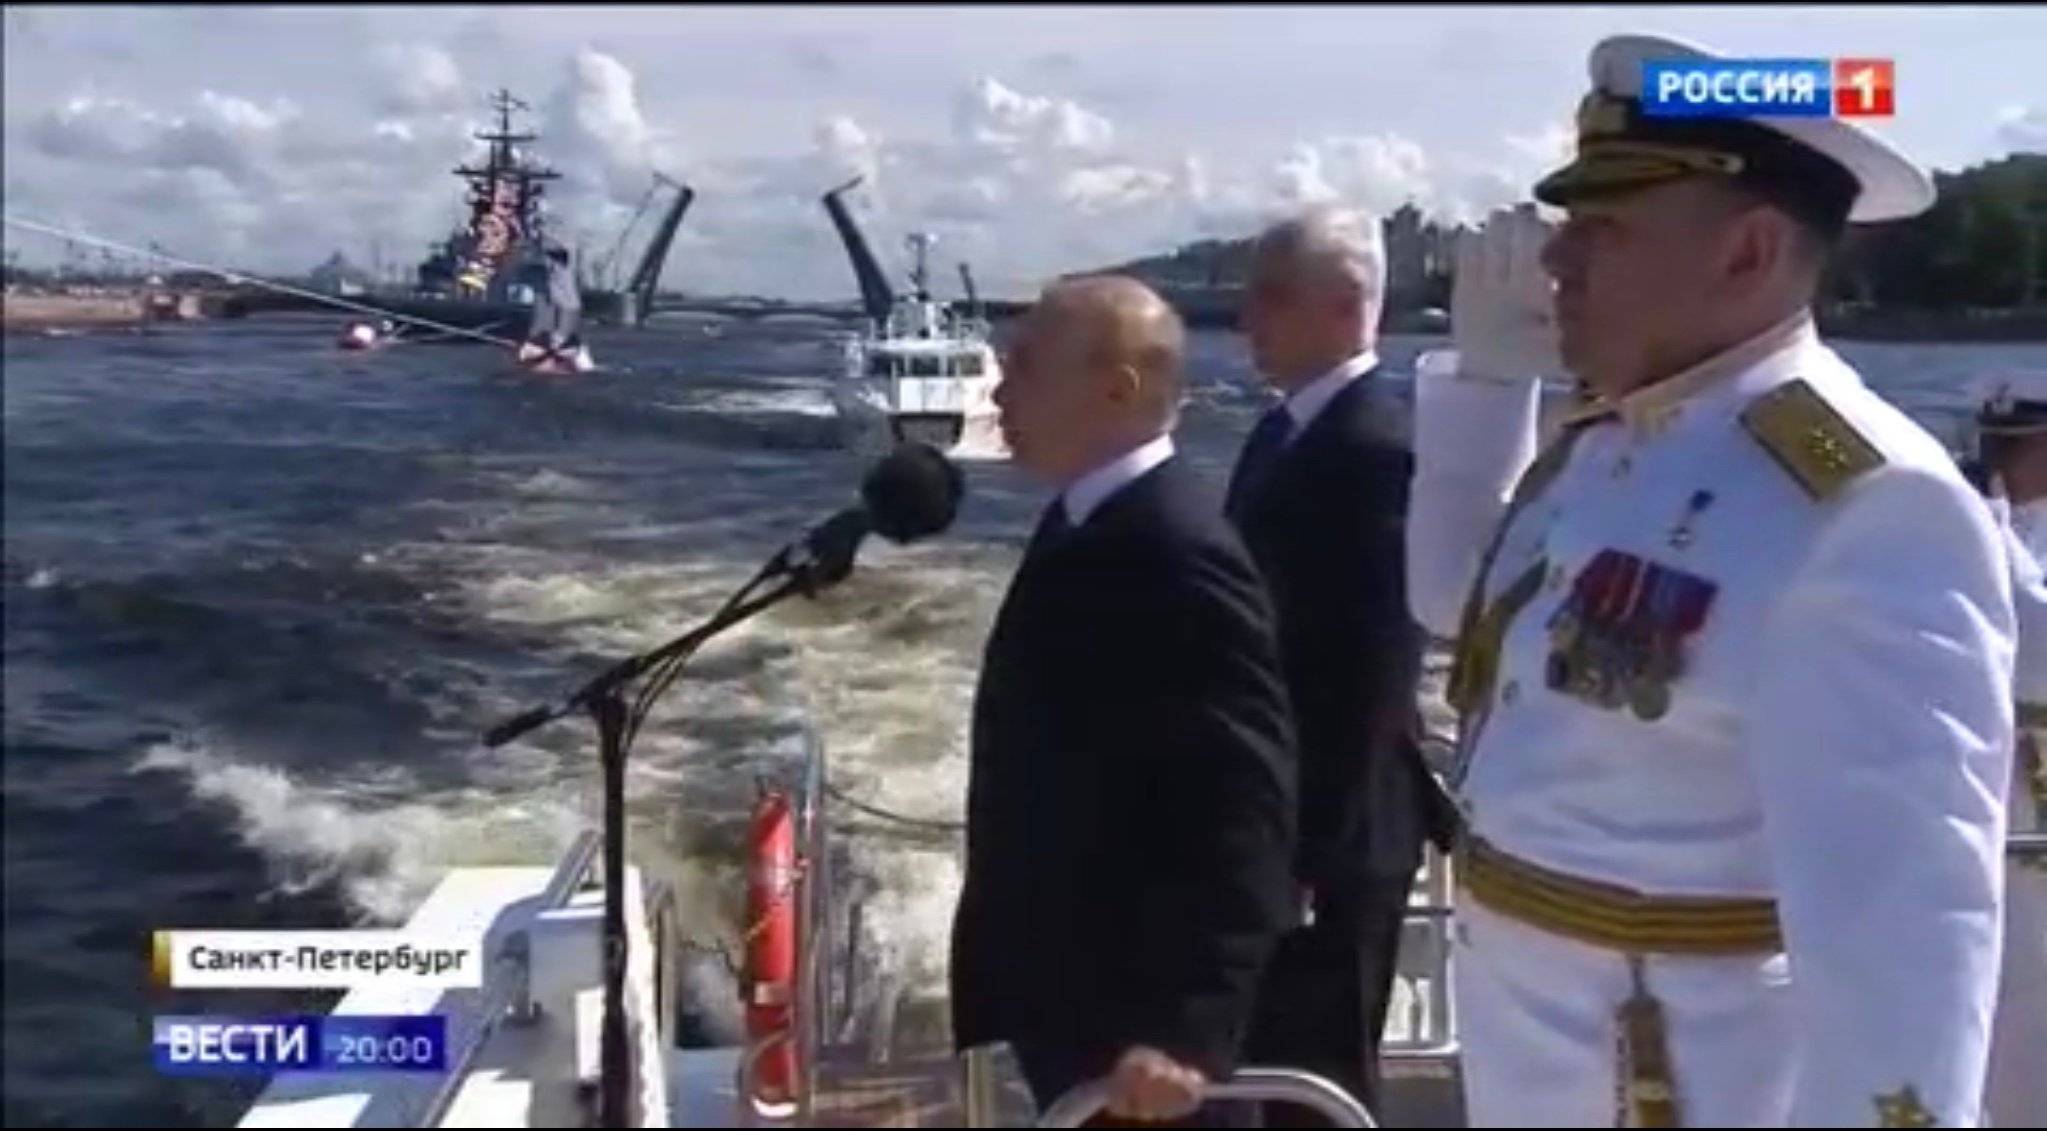 Putin mówi do mikrofonu stojąc w kutrze w towarzystwie oficerów floty w białych mundurach